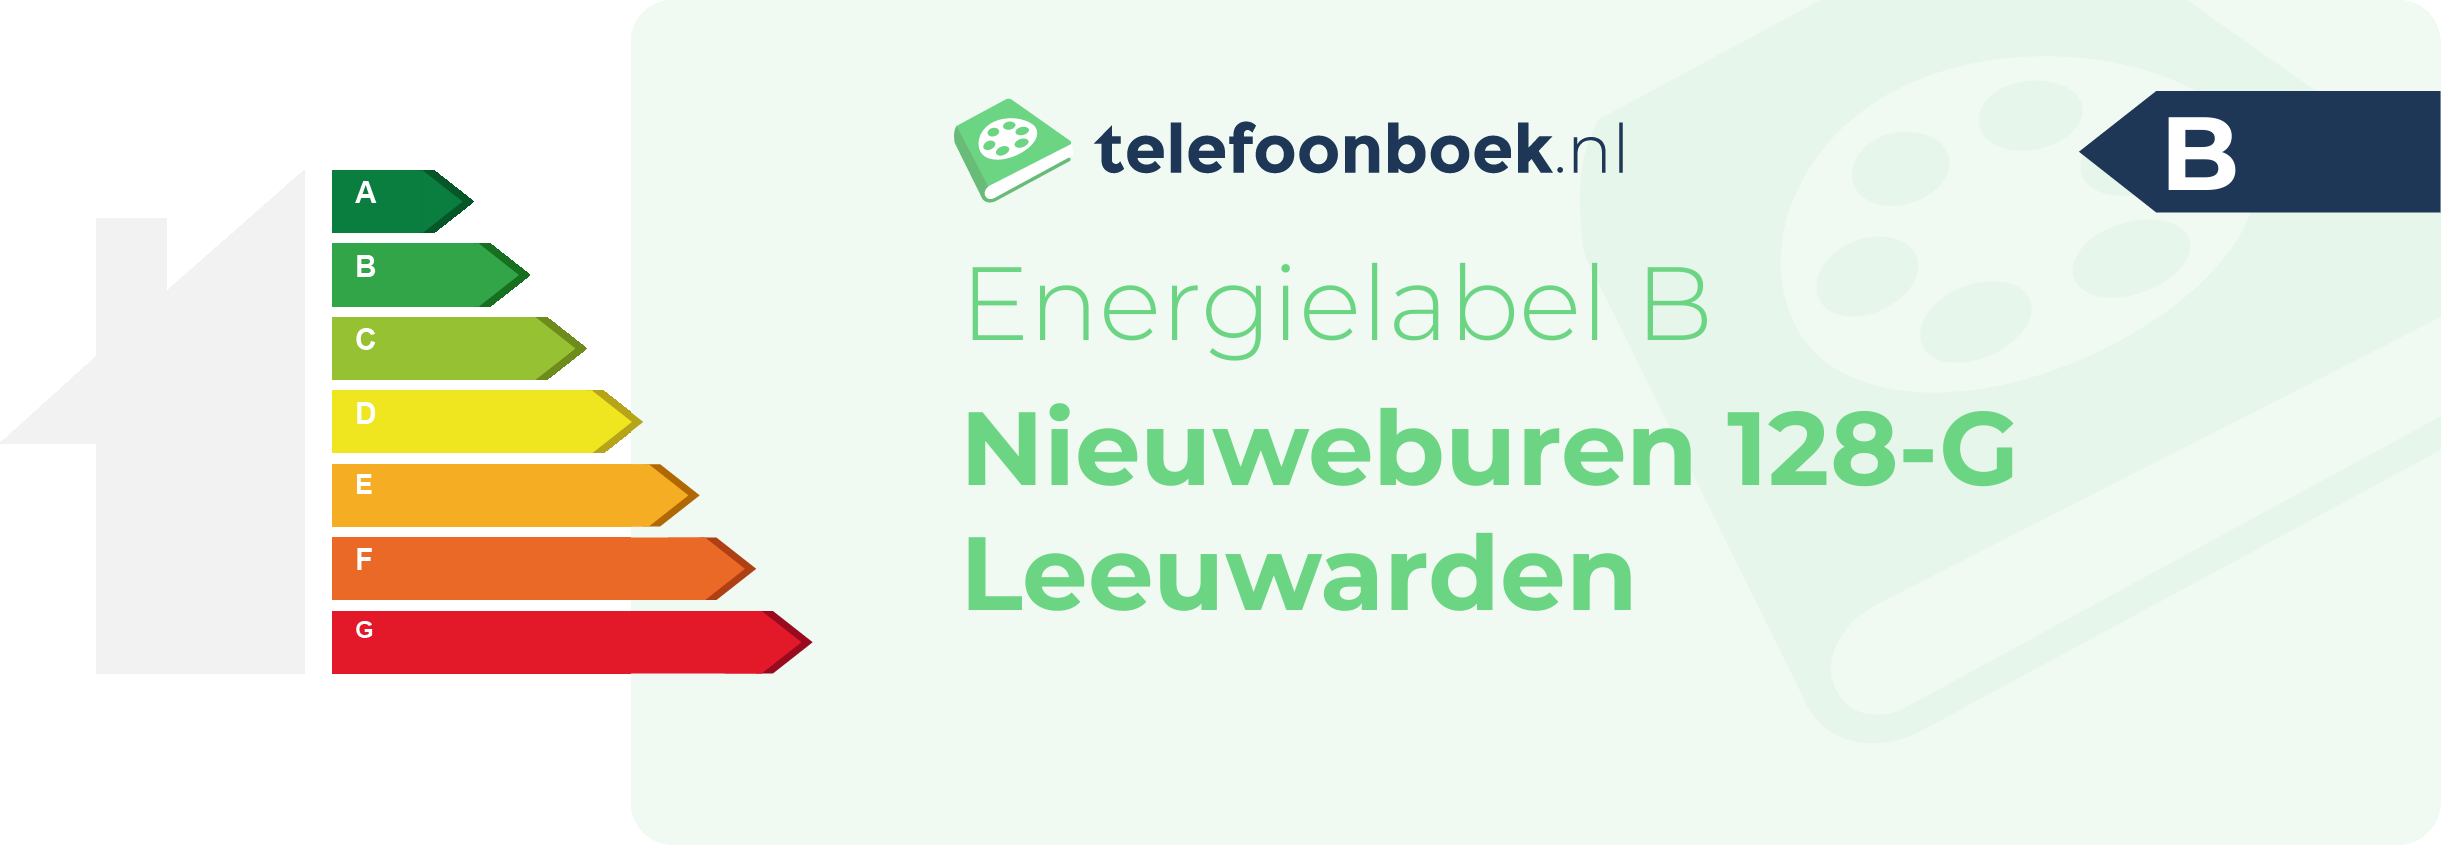 Energielabel Nieuweburen 128-G Leeuwarden